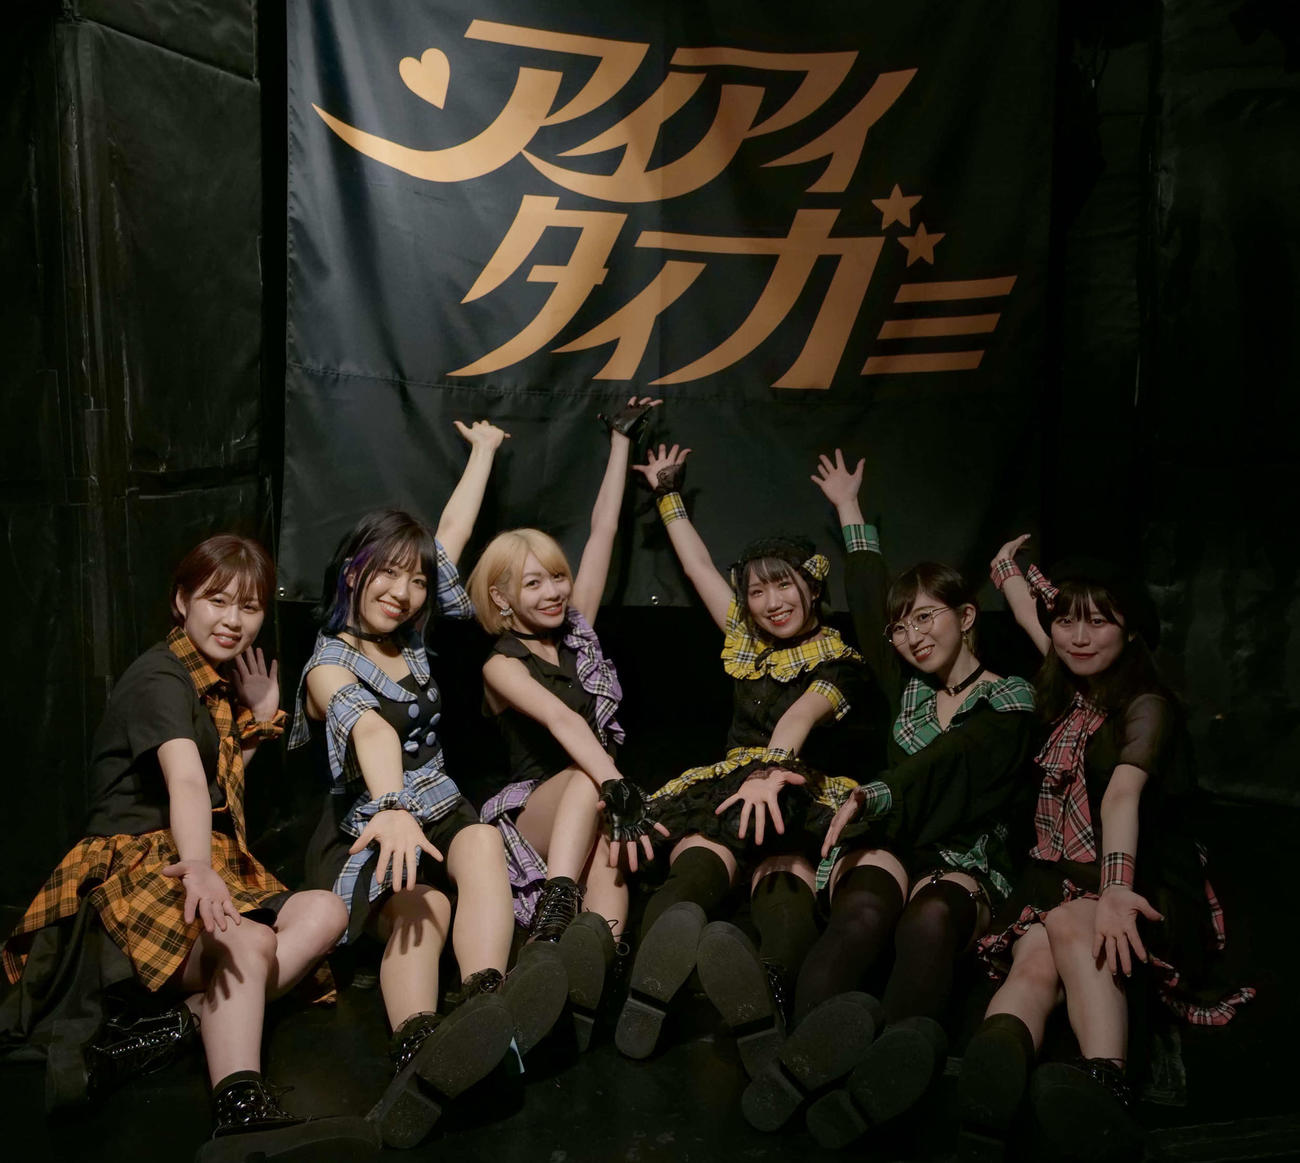 デビューライブを行った女性6人組アイドルグループ、アイアイタイガーのメンバー